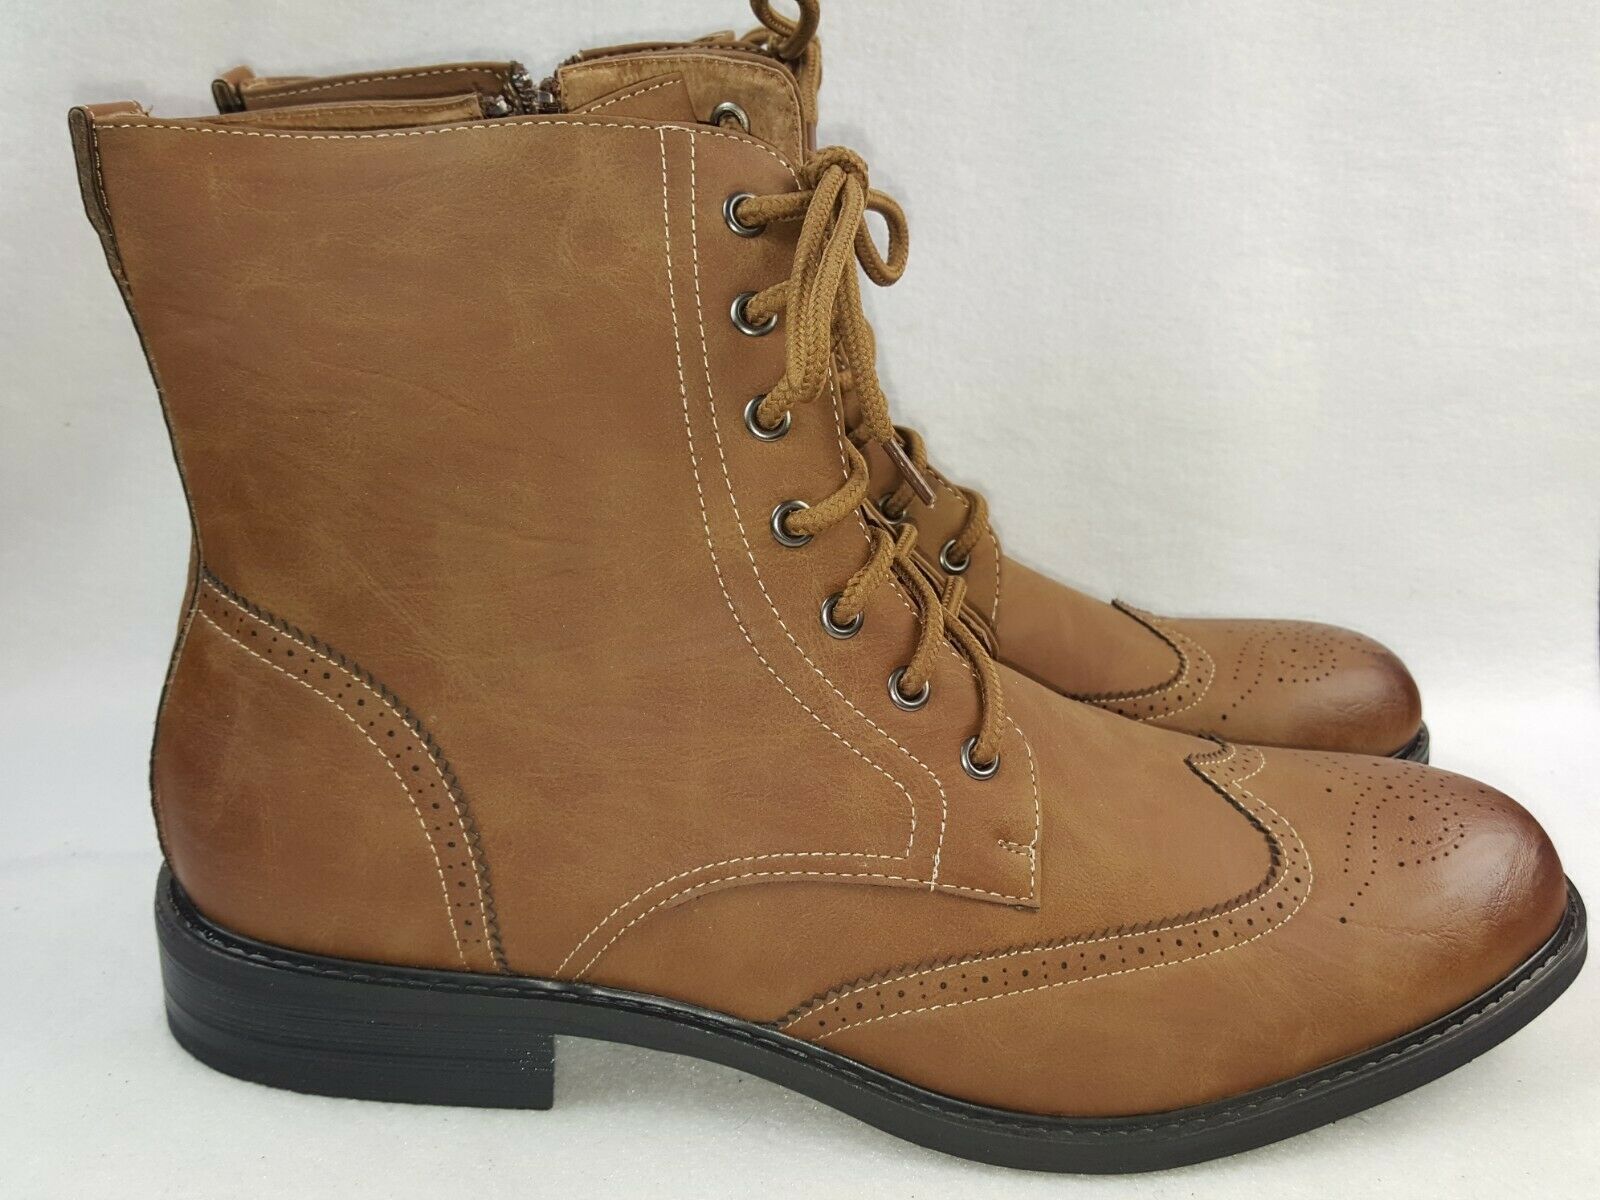 Delli Aldo "Ken M-828" Men's Stylish Ankle Dress Boots Size 11 & 13